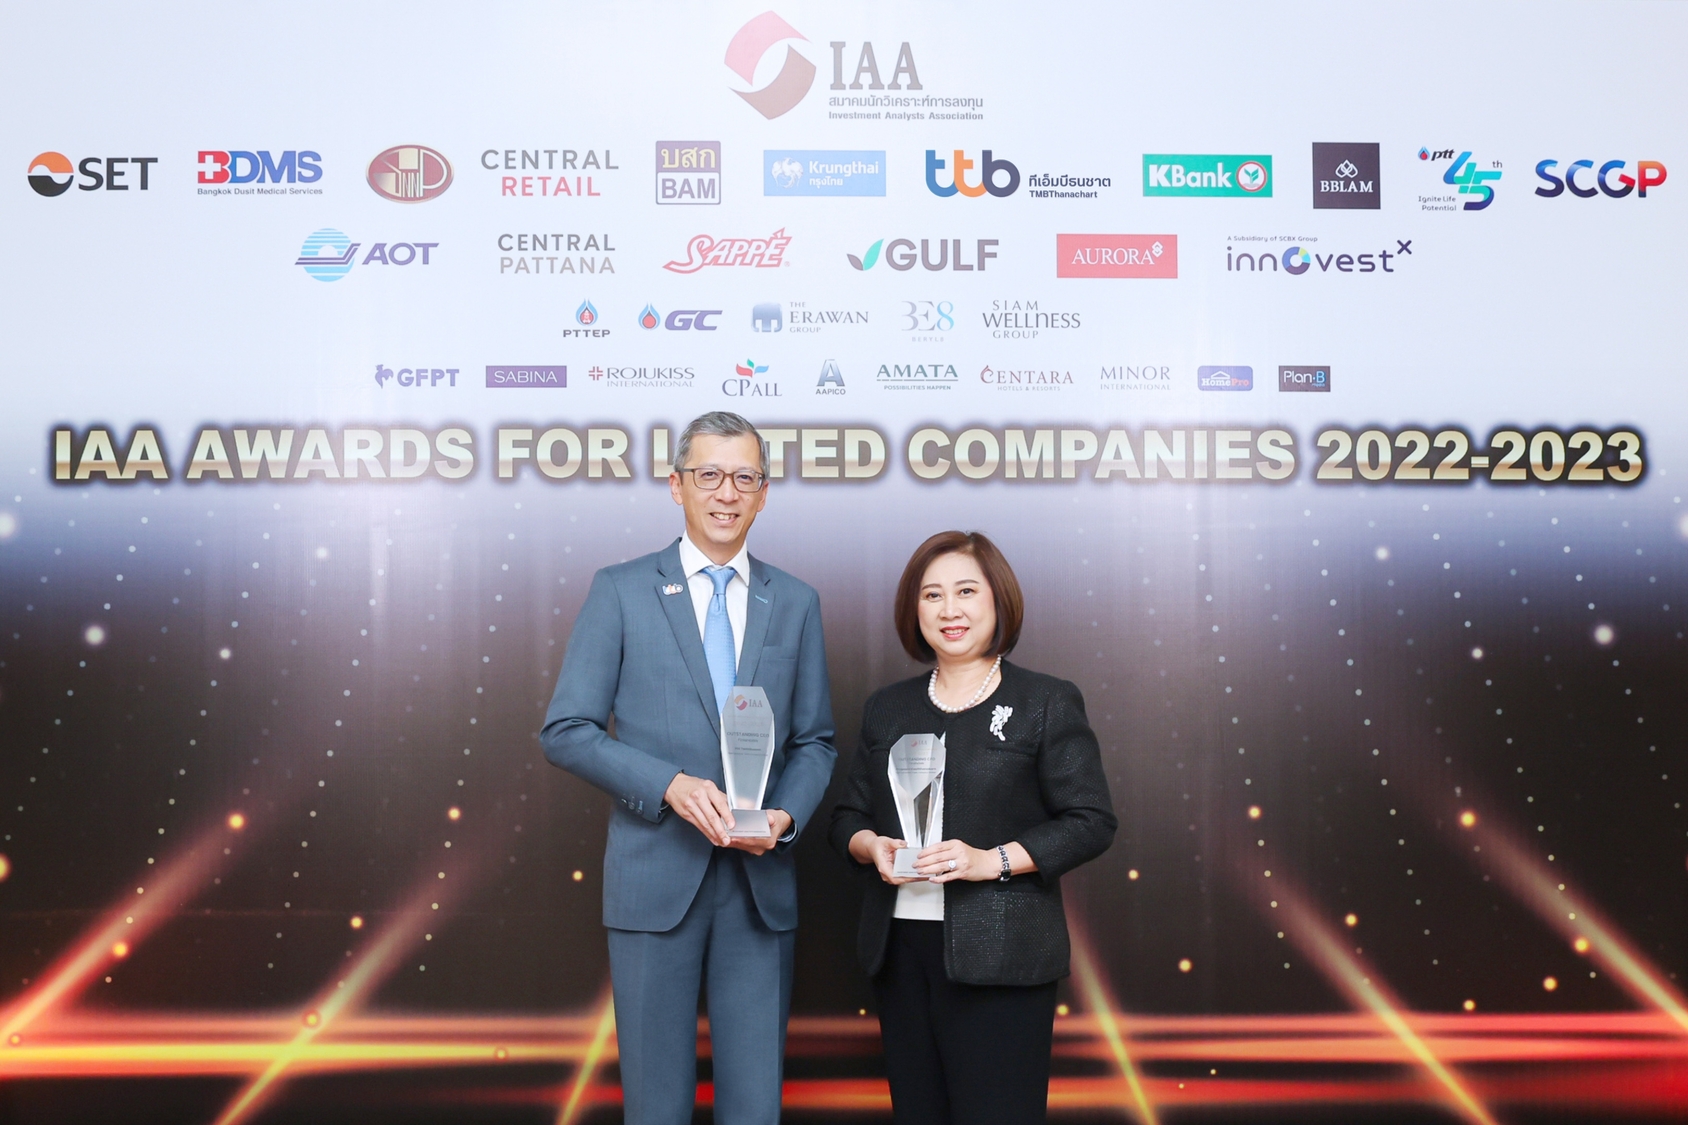 ทีเอ็มบีธนชาต คว้า 2 รางวัล จากเวที IAA Awards for Listed Companies 2022 – 2023 สะท้อนความเป็นเลิศของผู้บริหารในการนำพาองค์กรเติบโตอย่างยั่งยืน